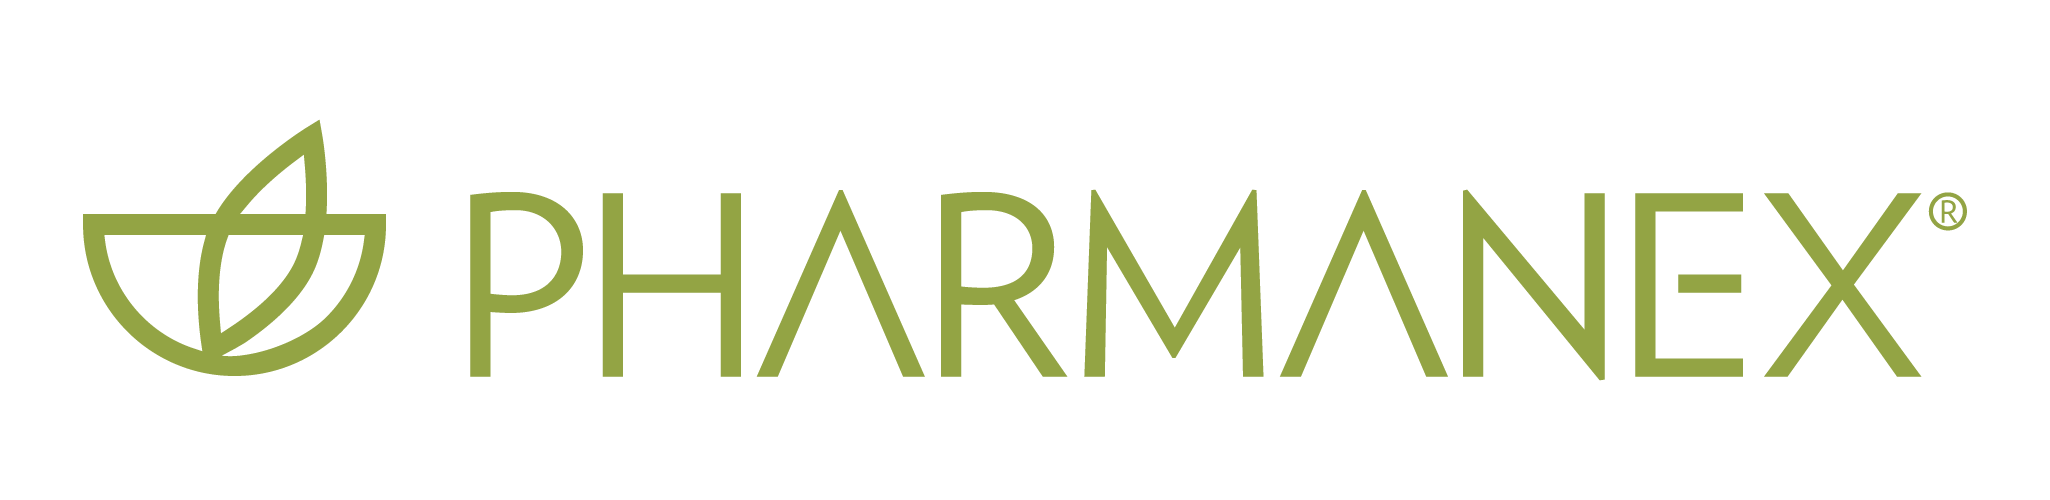 pharmanex-logo (3)